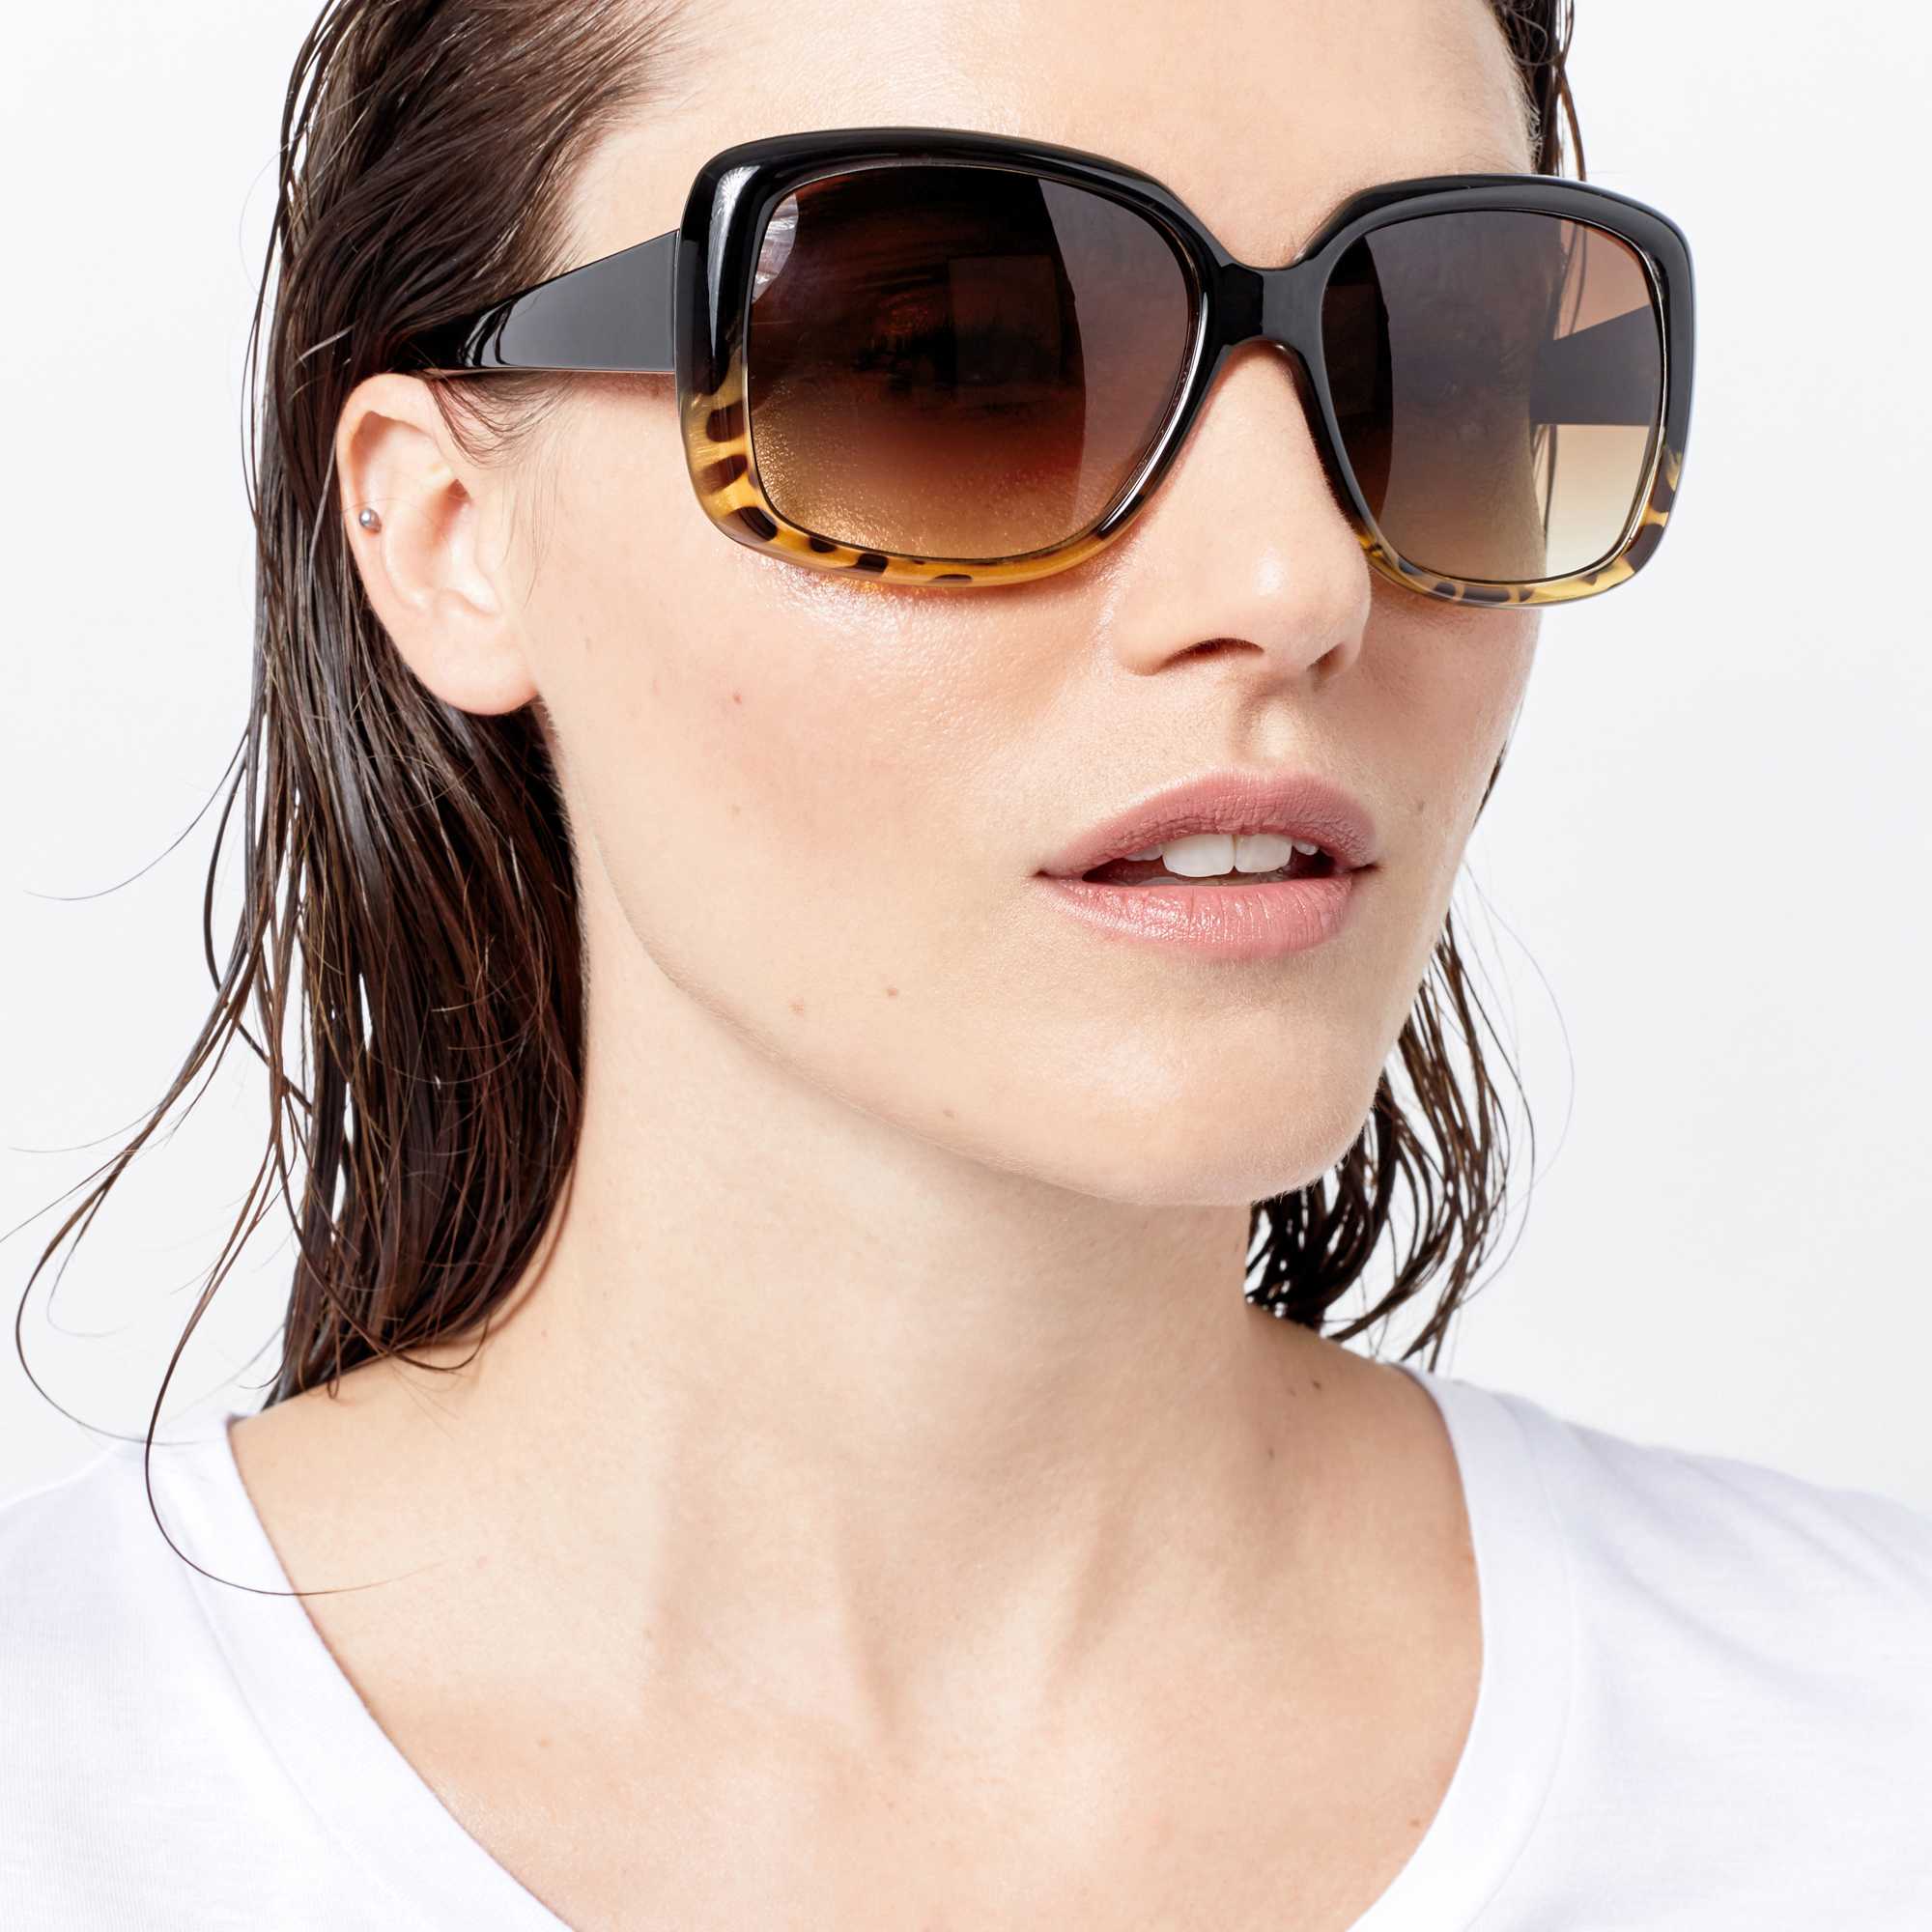 Модная форма солнцезащитных очков. Солнцезащитные очки. Очки солнцезащитные женские. Модные солнцезащитные очки. Очки солнцезащитные женские модные.